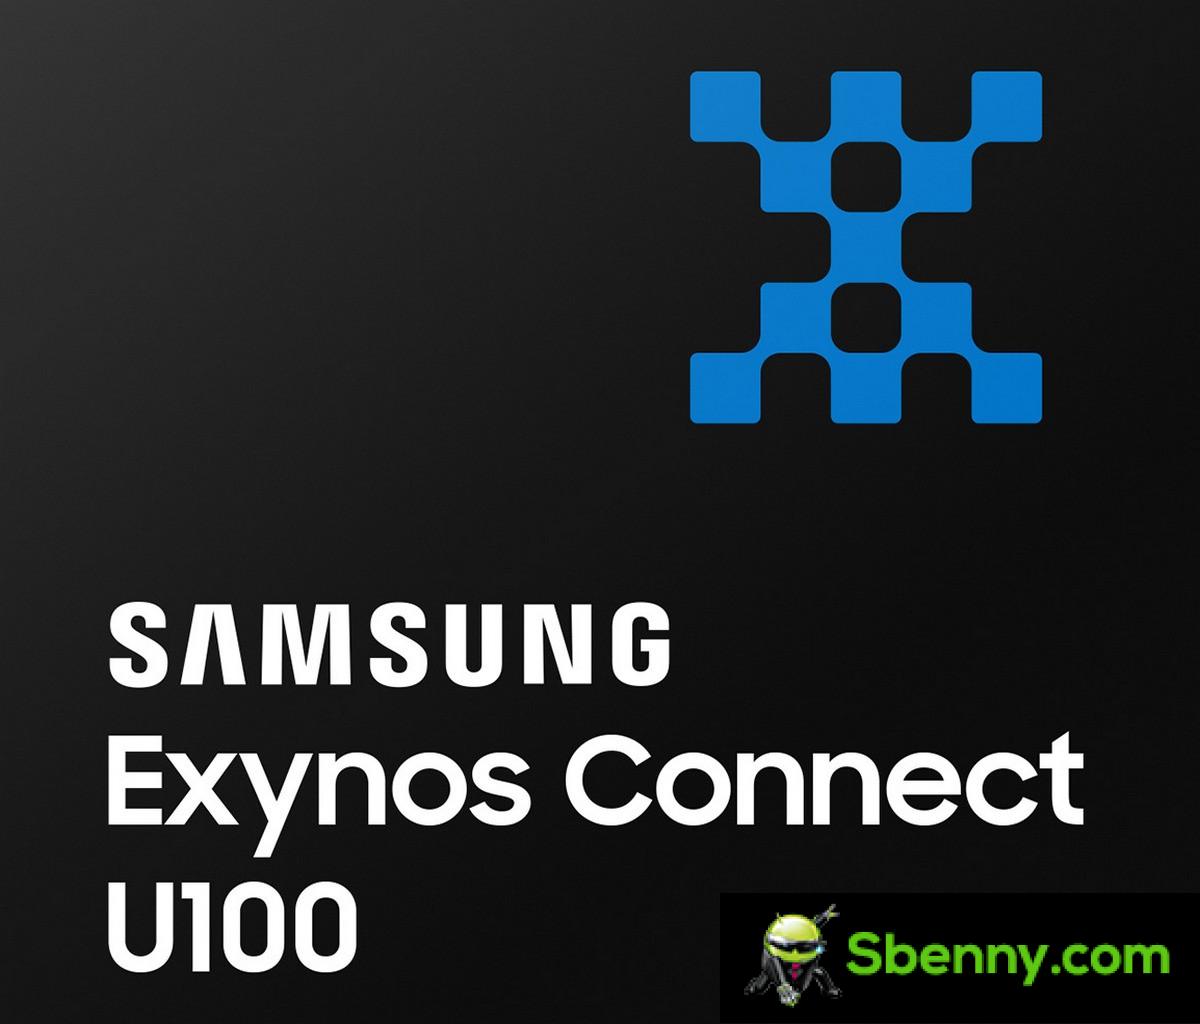 Samsung представляет Exynos Connect U100, свой сверхширокополосный чипсет